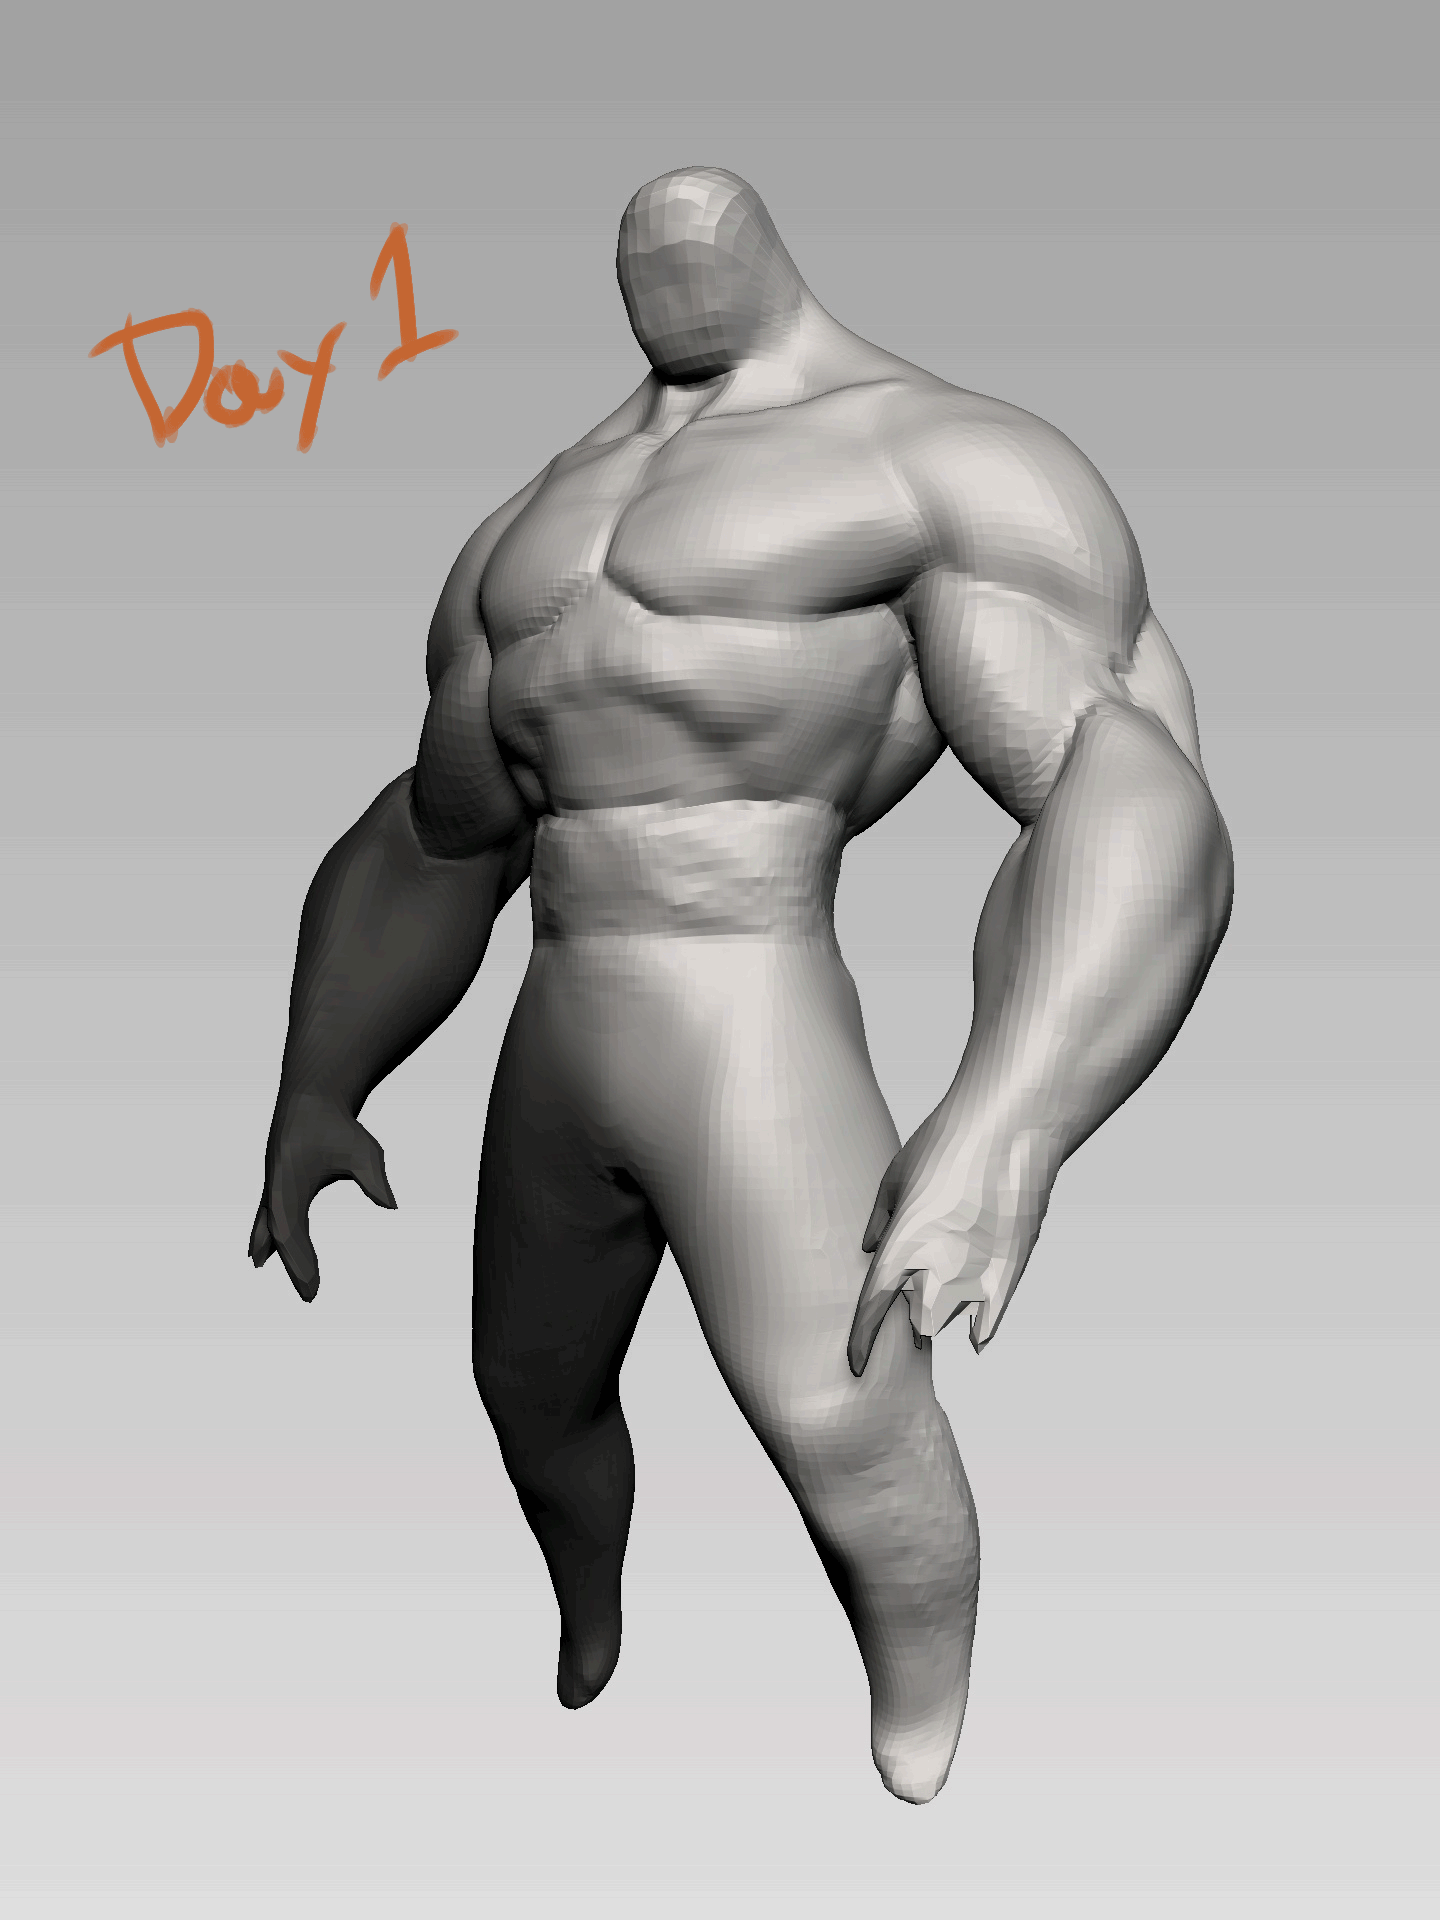 ↑ 17 Days sculpting process